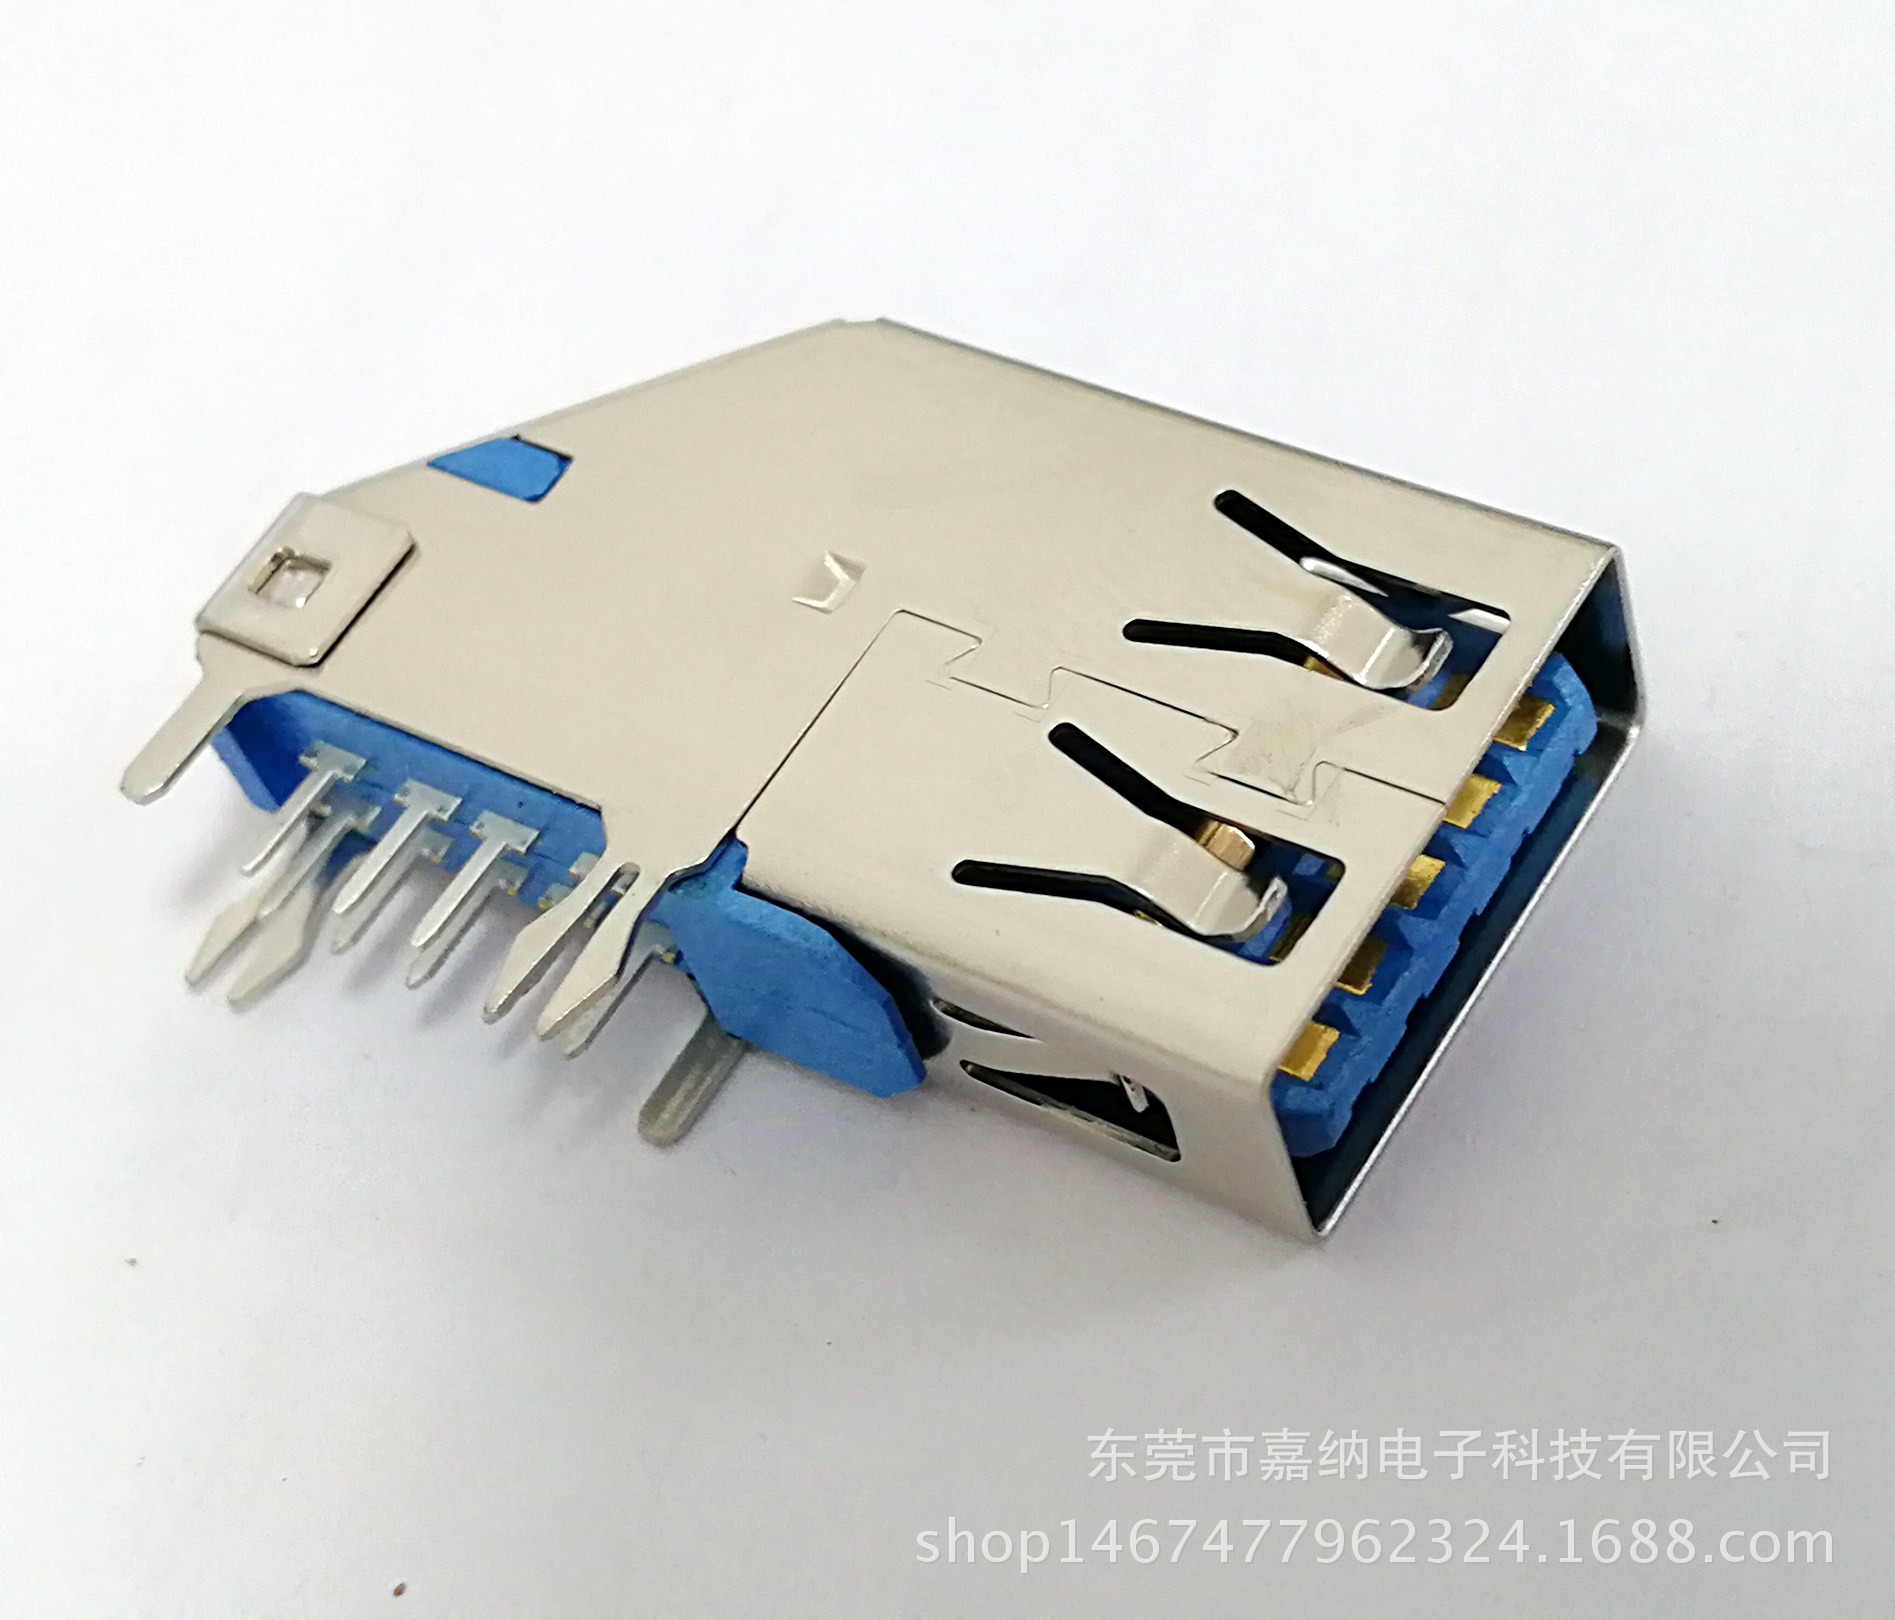 厂家直销电脑连接器USB 3.0 9p A/F 侧插长体DIP90度蓝